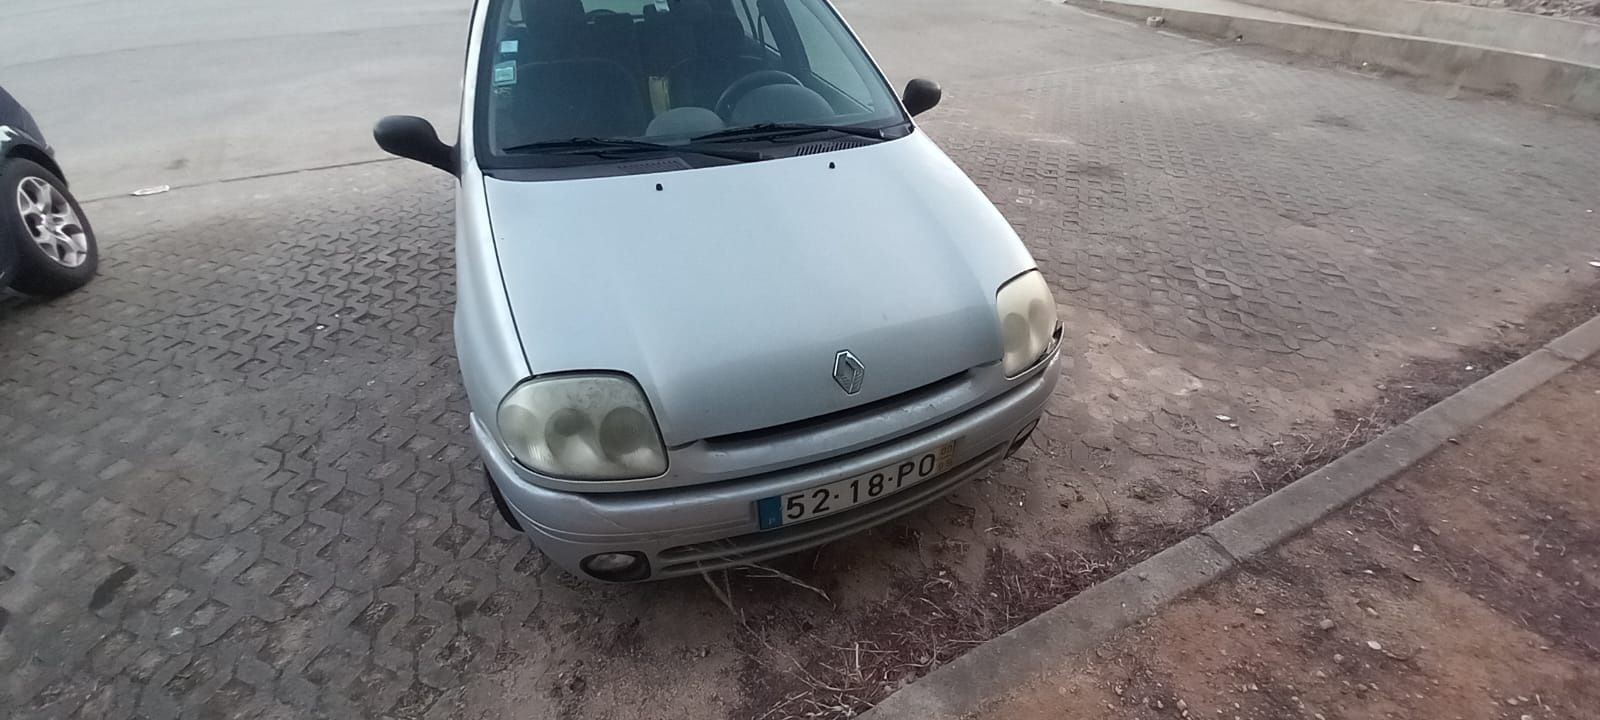 Renault Clio 1.2 gasolina